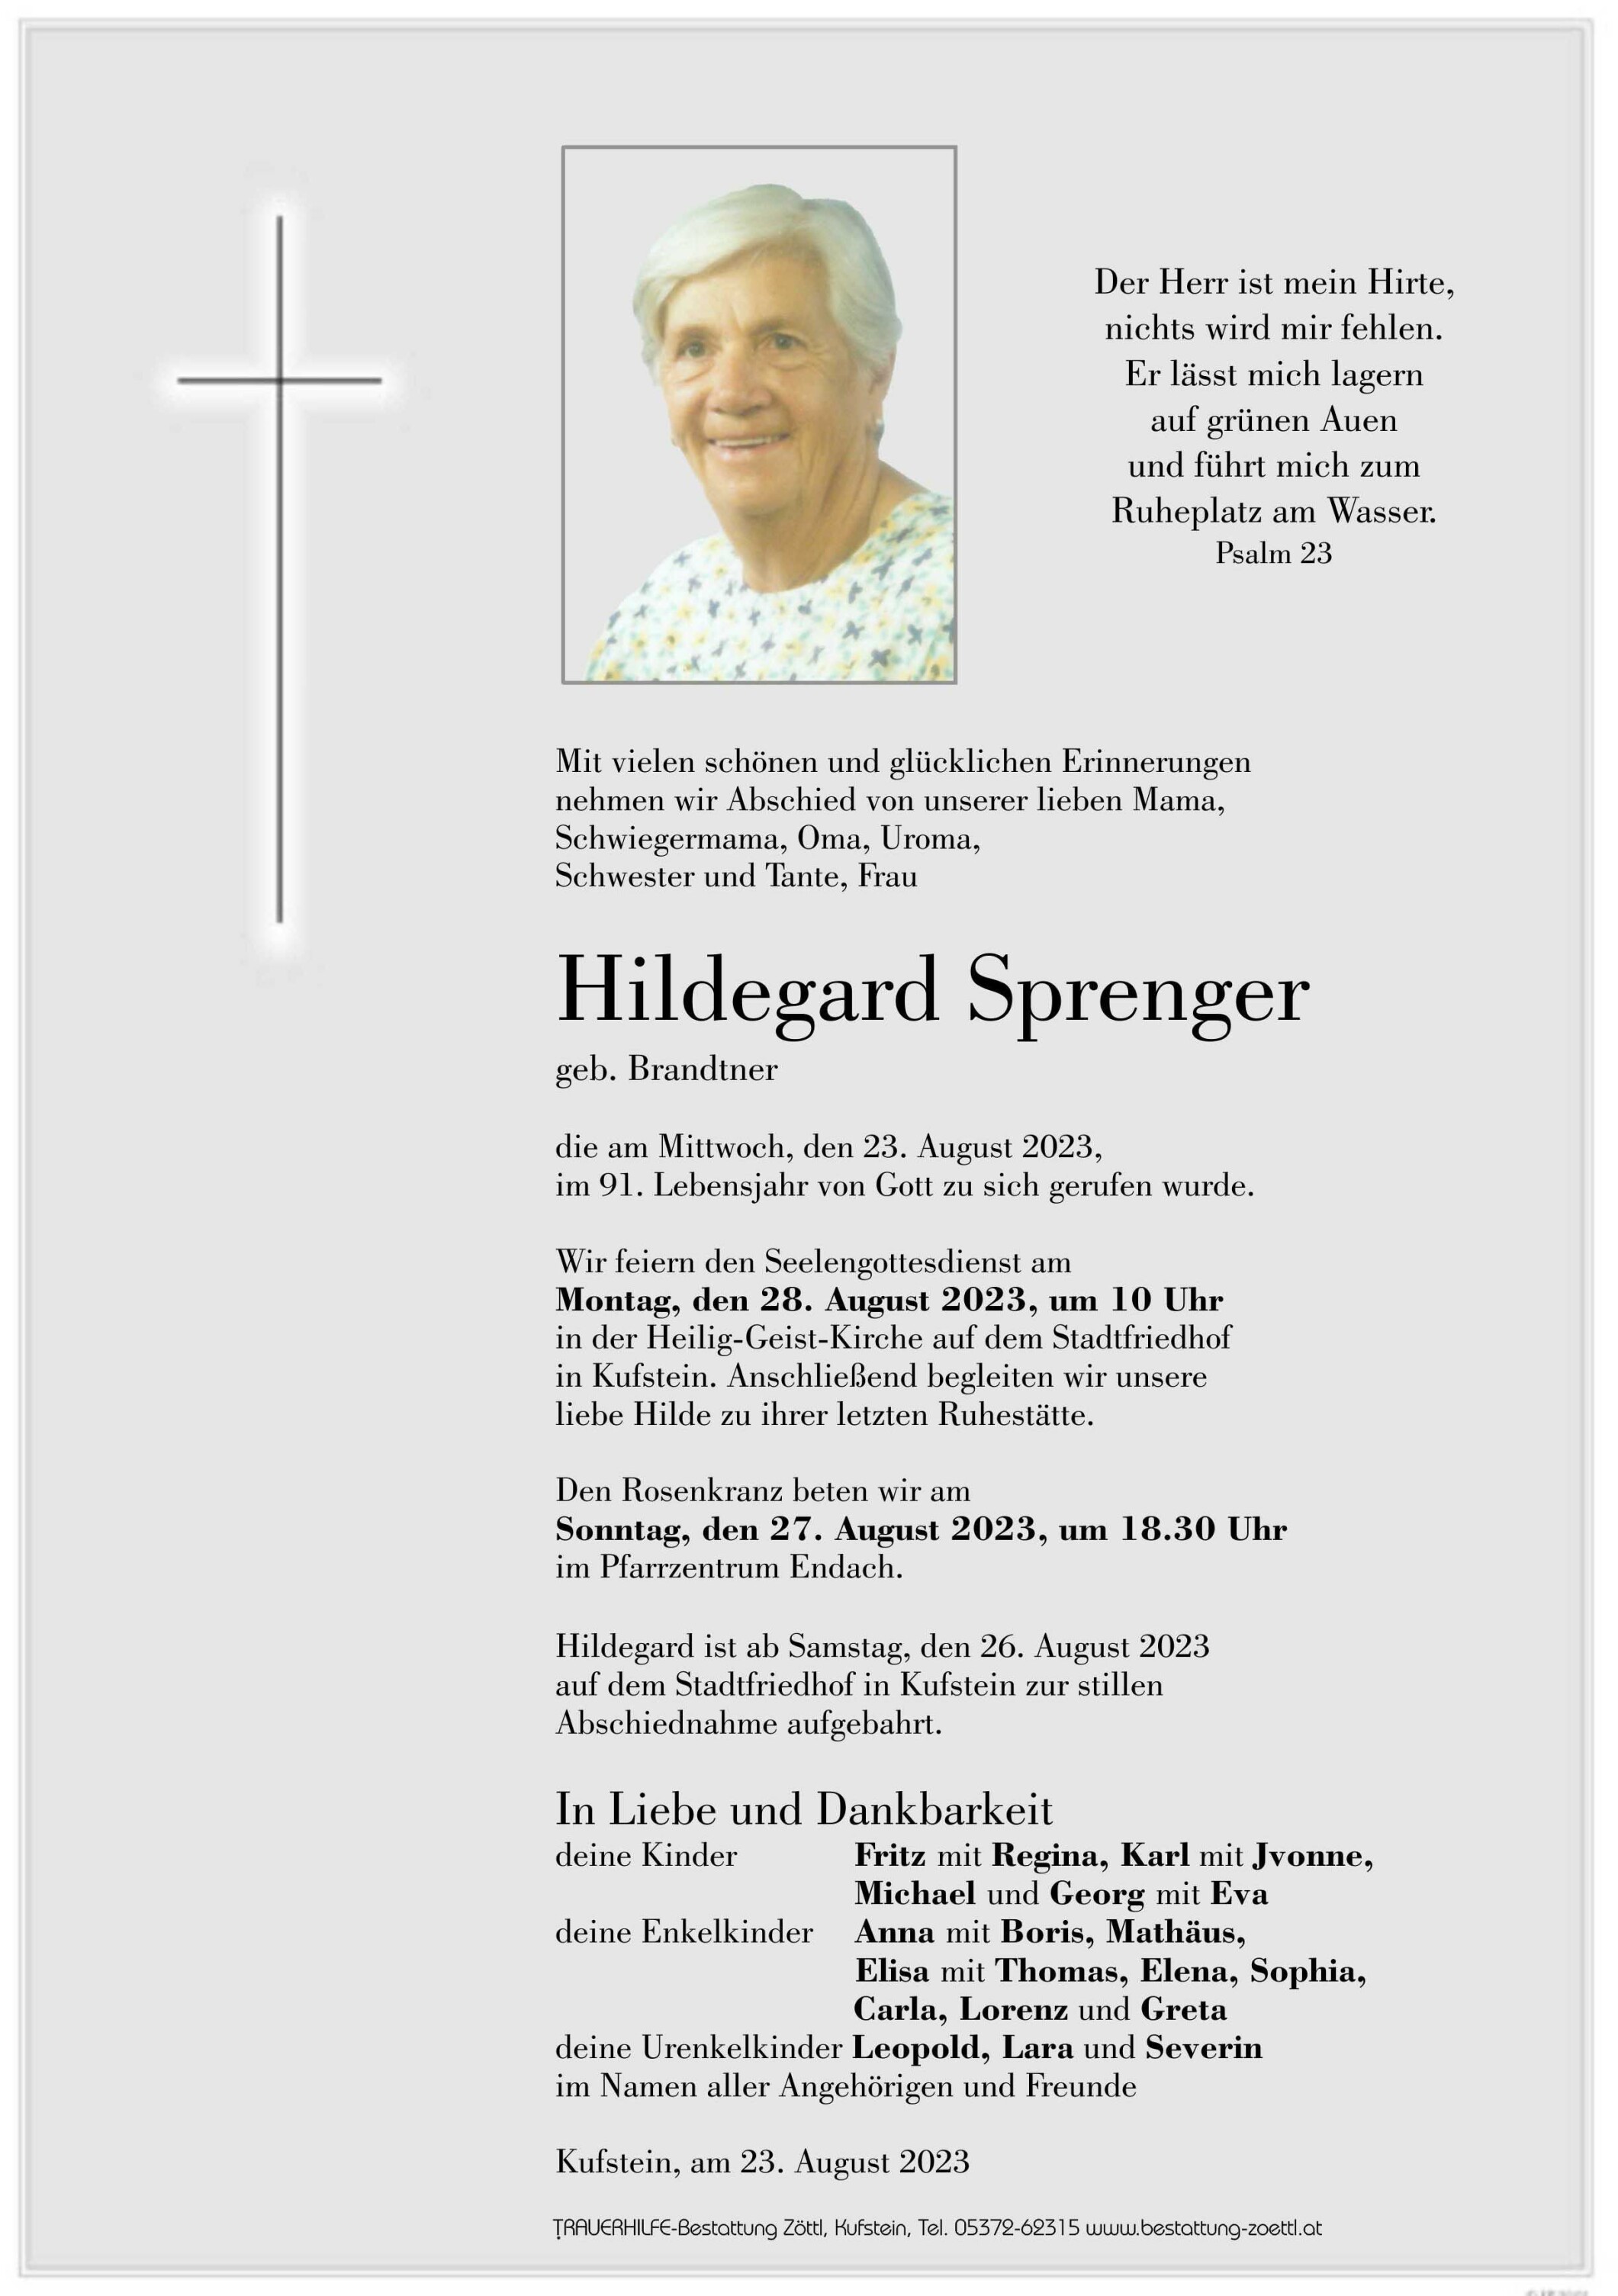 Hildegard Sprenger